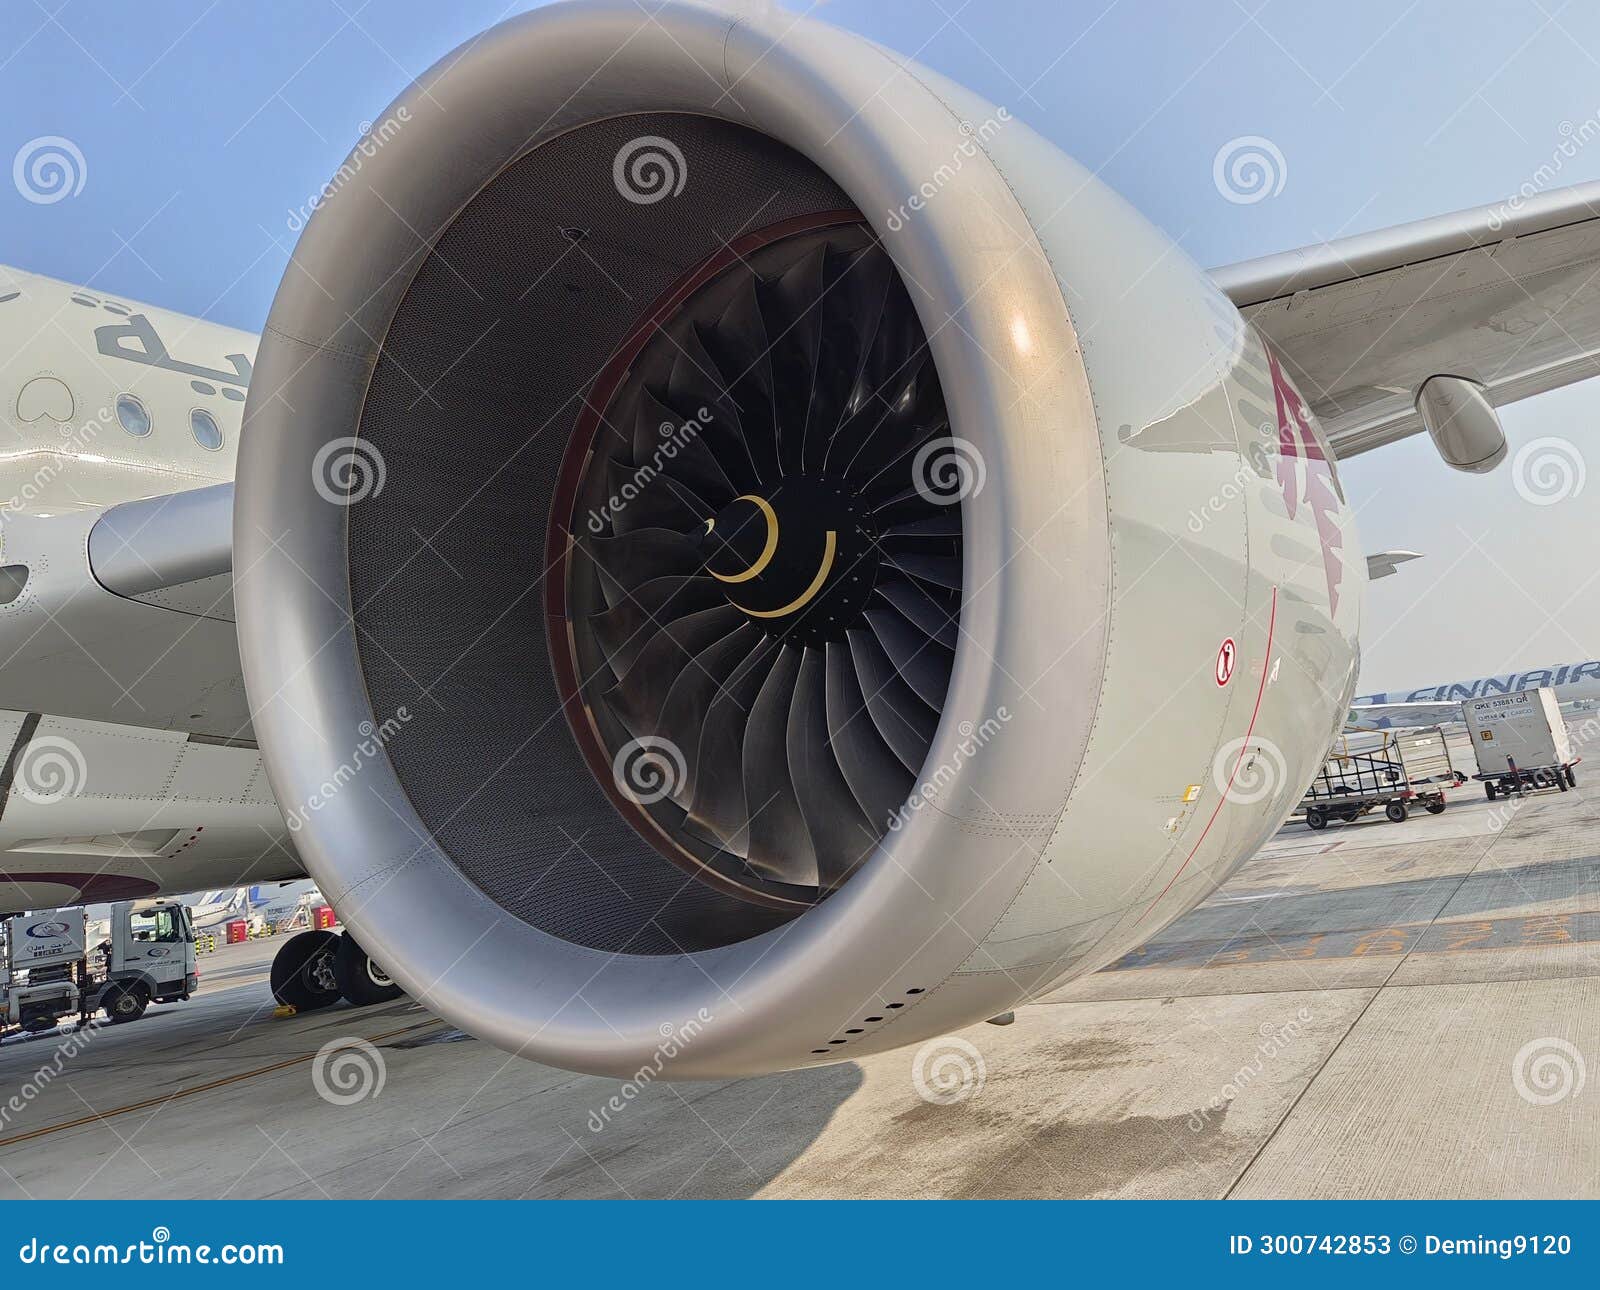 rolls-royce trent xwb-84 engine of qatar airways a350-900